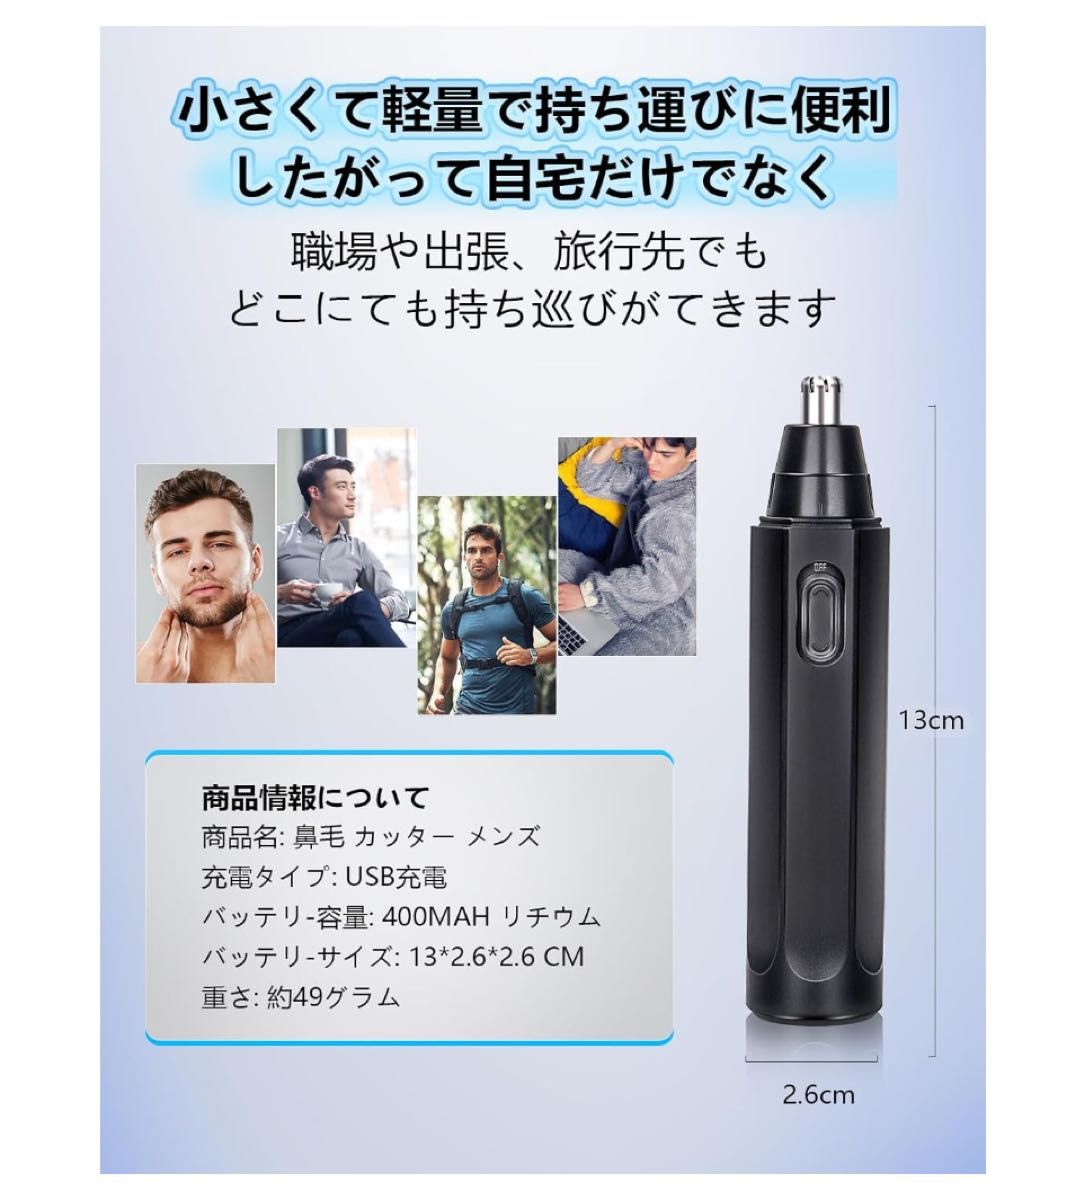 【新登場 & USB充電式 】 鼻毛カッター【1台多役 多機能】水洗い可能 男女兼用 